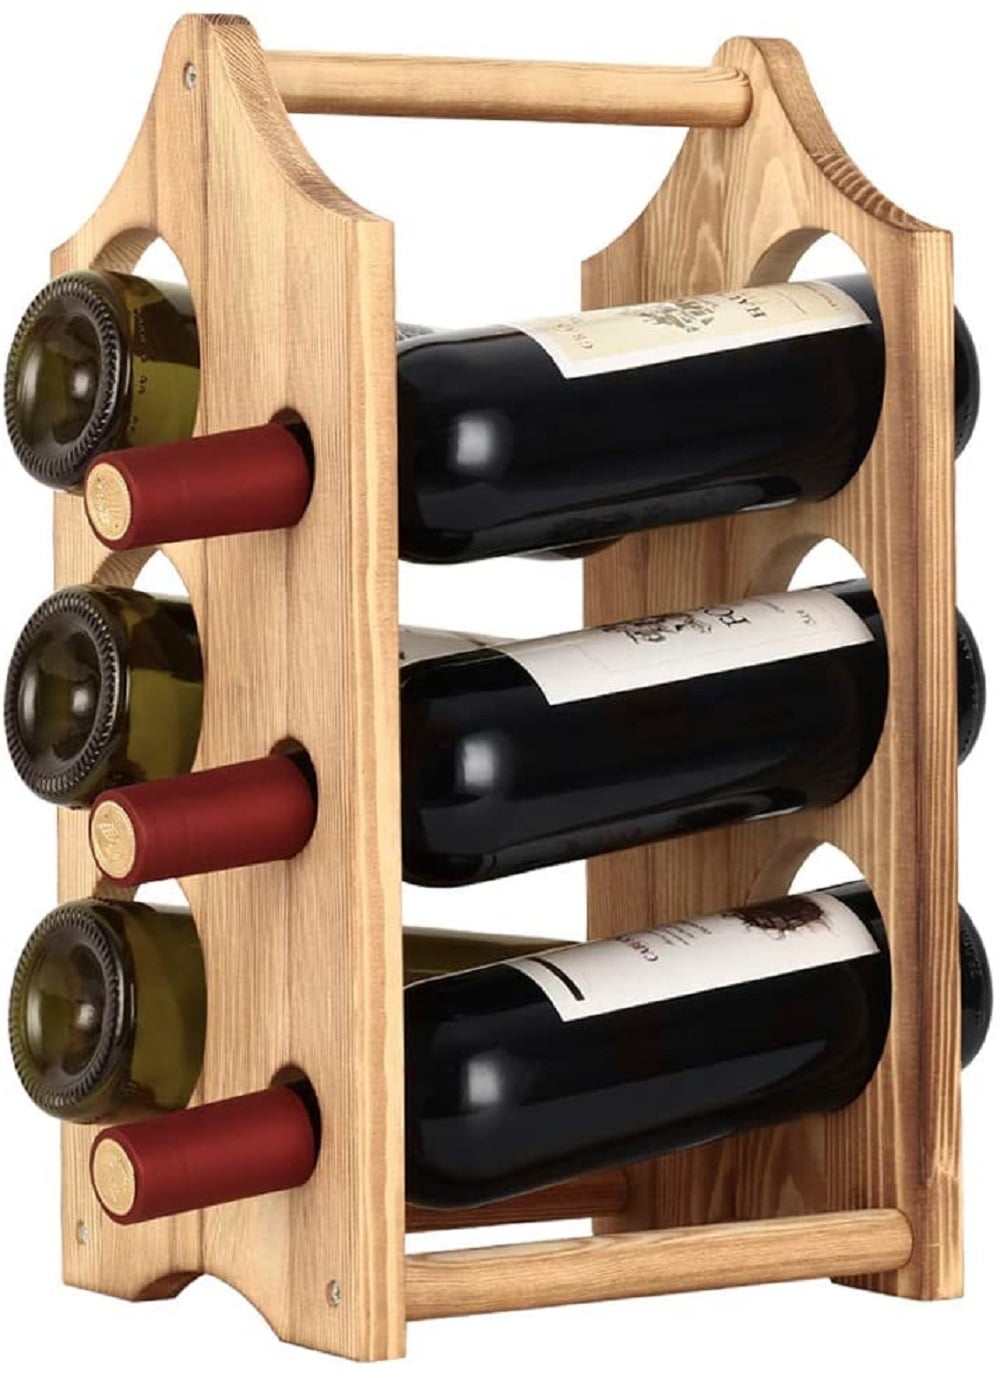 6 Bottles Countertop Wine Racks Storage Rustic Wood Wine Bottle Holder 